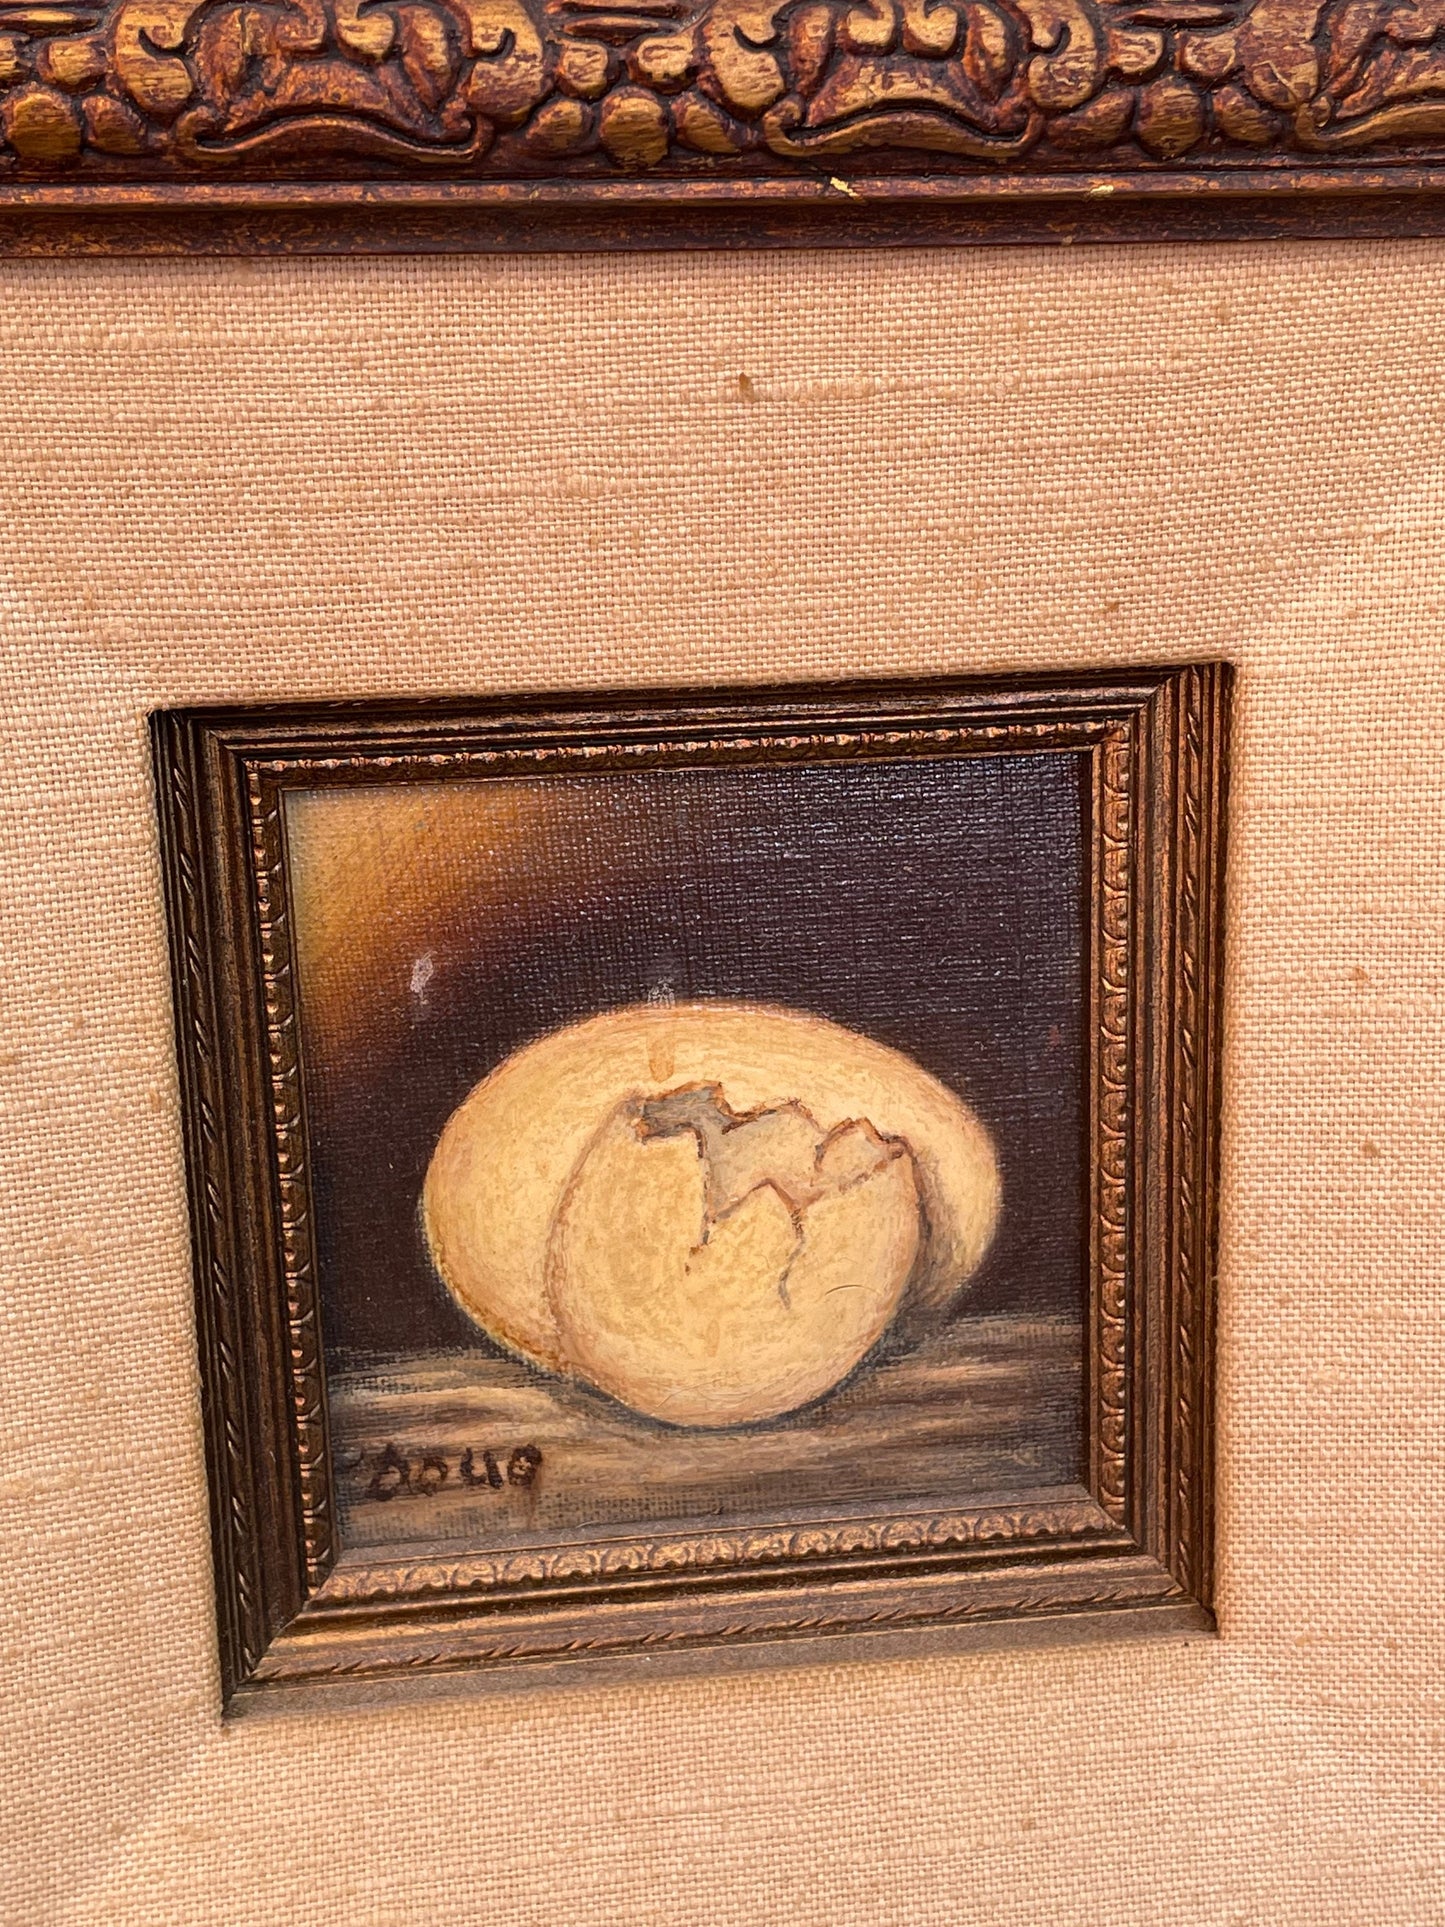 Folk Art Still Life Cracked Egg Oil Painting Wooden Frame